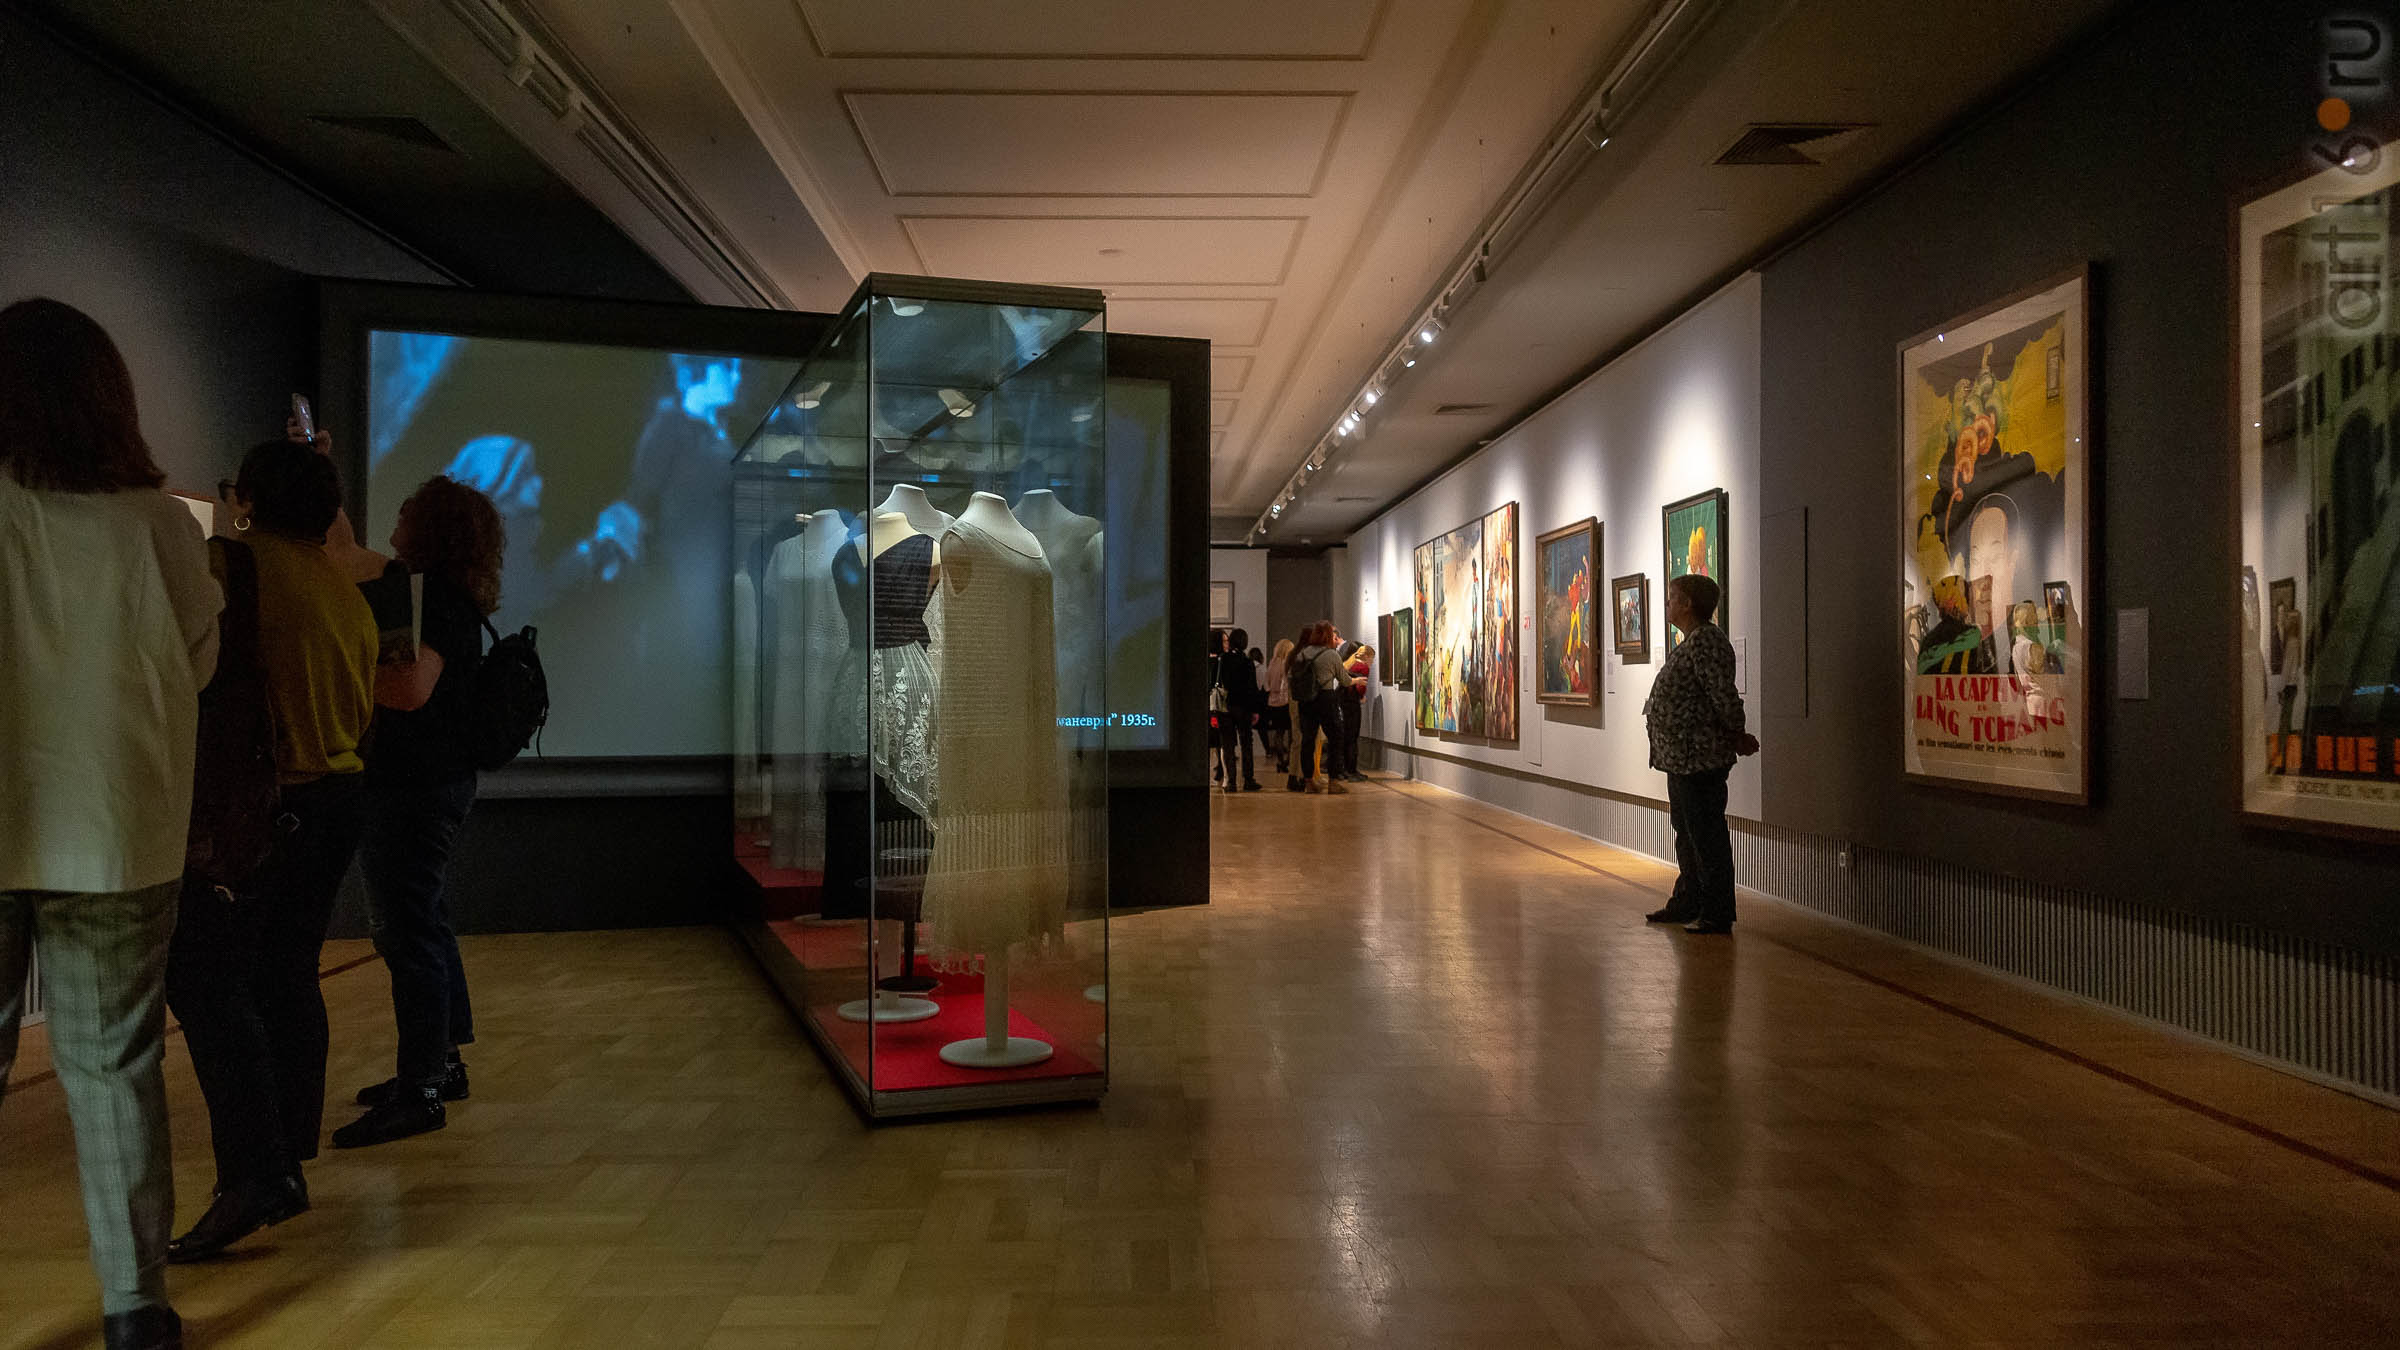 Фрагмент экспозиции ʺМода и стиль Эртеʺ (костюмы в стиле ар-деко, киноафиши)::Матисс. Пикассо. Шагал...